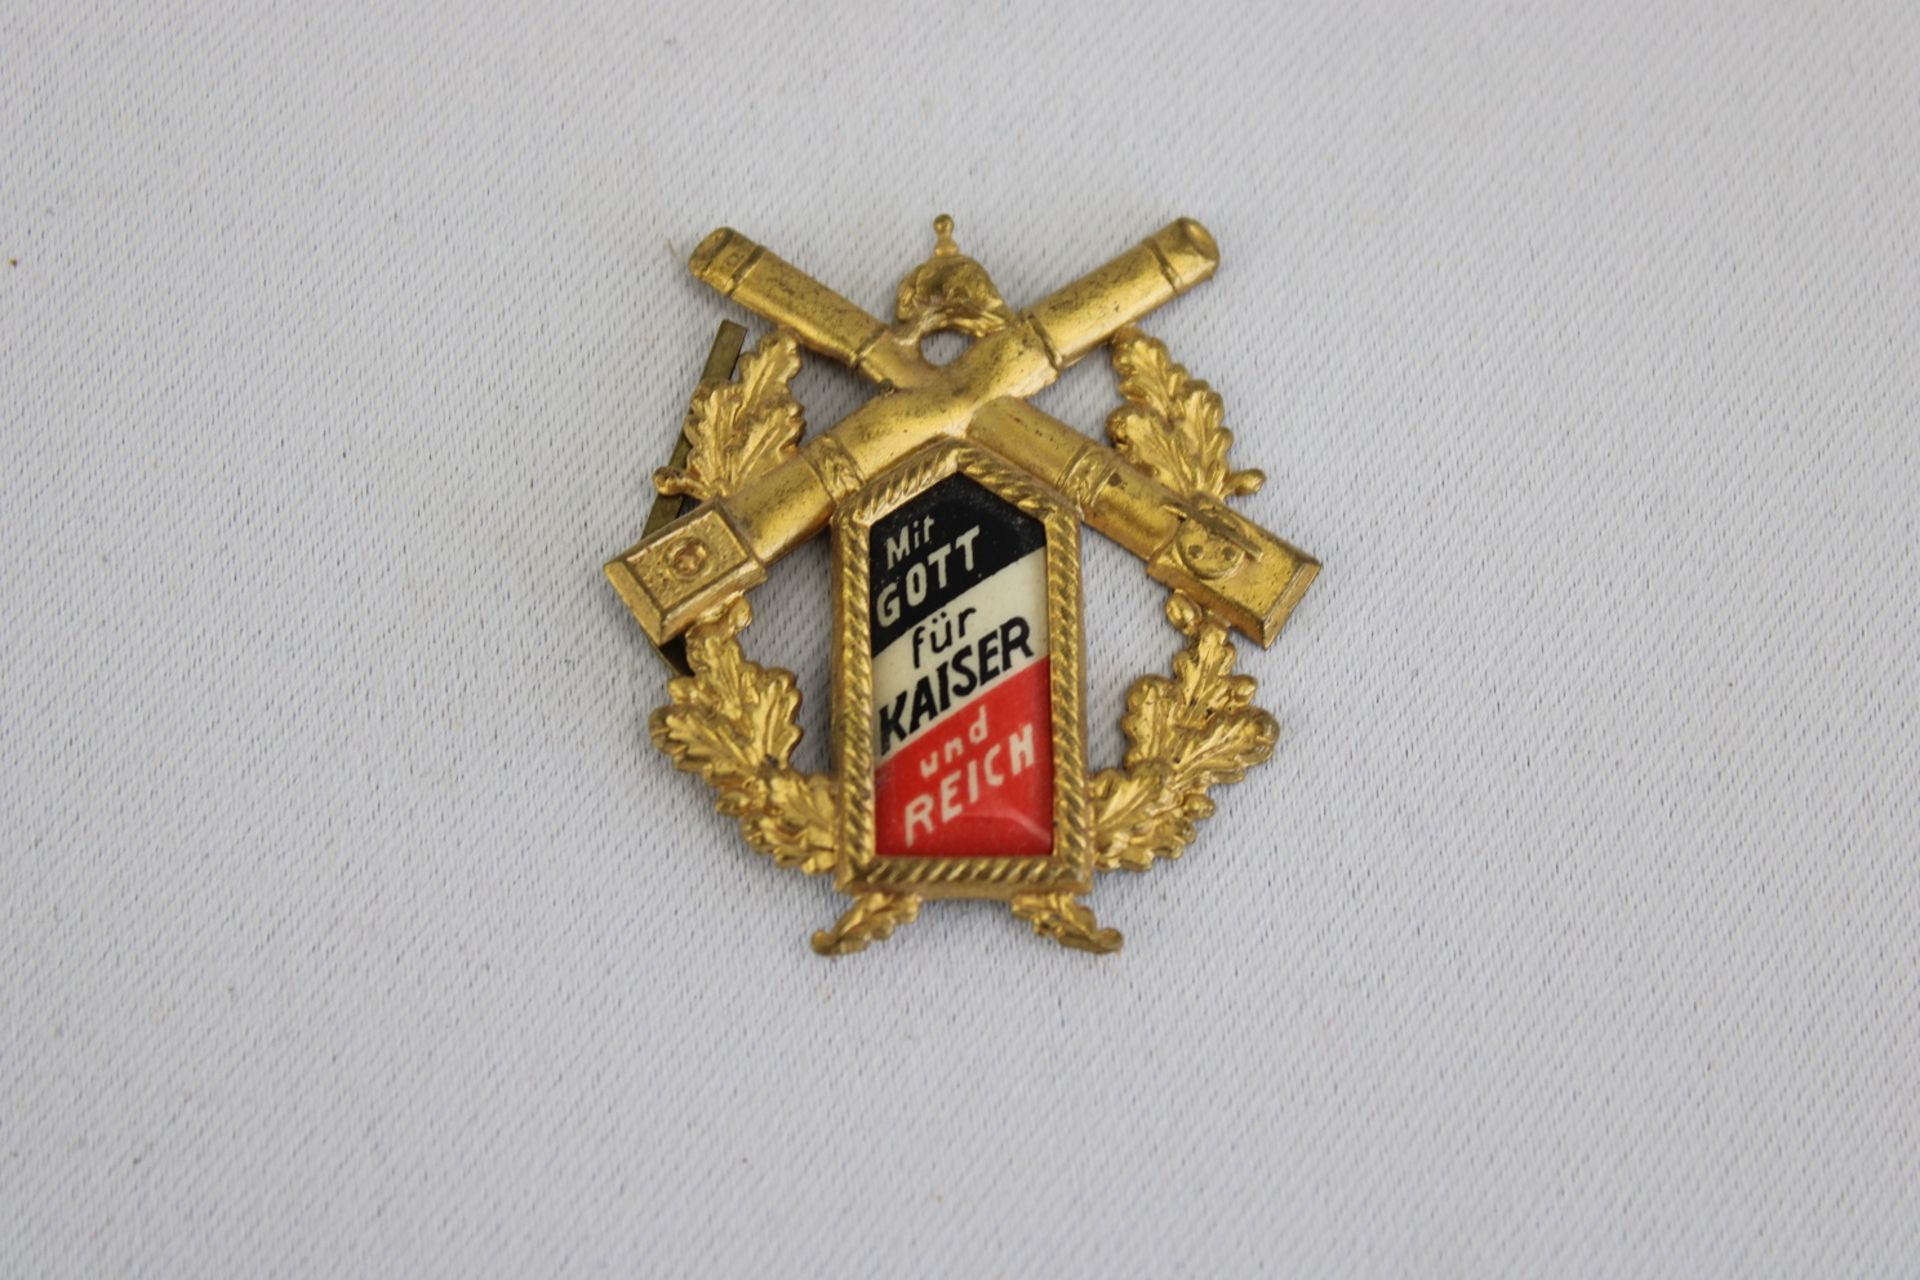 "Mit Gott für Kaiser und Reich"- Emblem